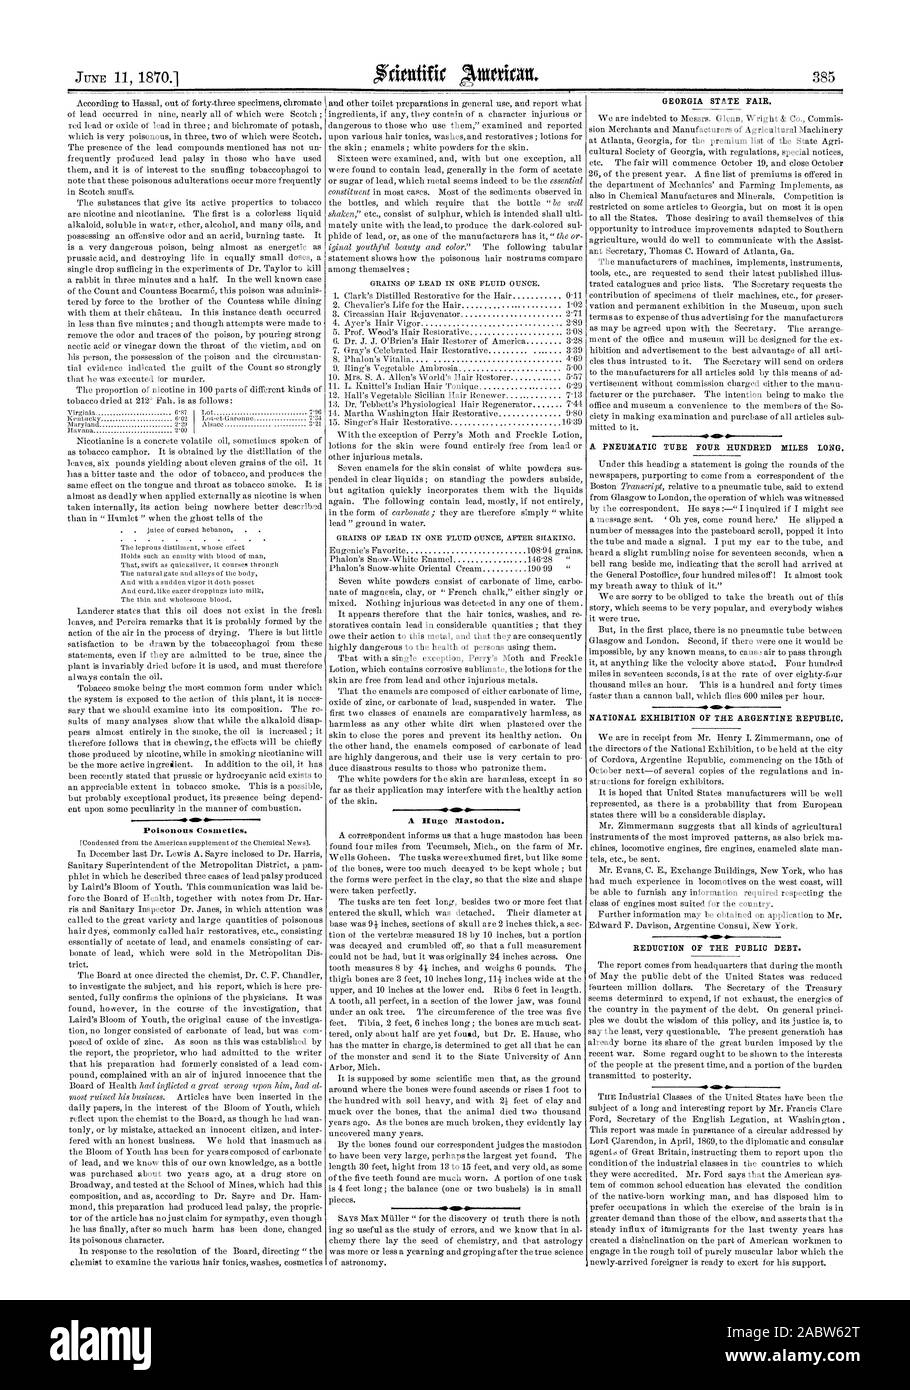 GEORGIA STATE FAIR. Nationale AUSSTELLUNG DER ARGENTINISCHEN REPUBLIK. Reduzierung der öffentlichen Verschuldung., Scientific American, 1870-06-11 Stockfoto